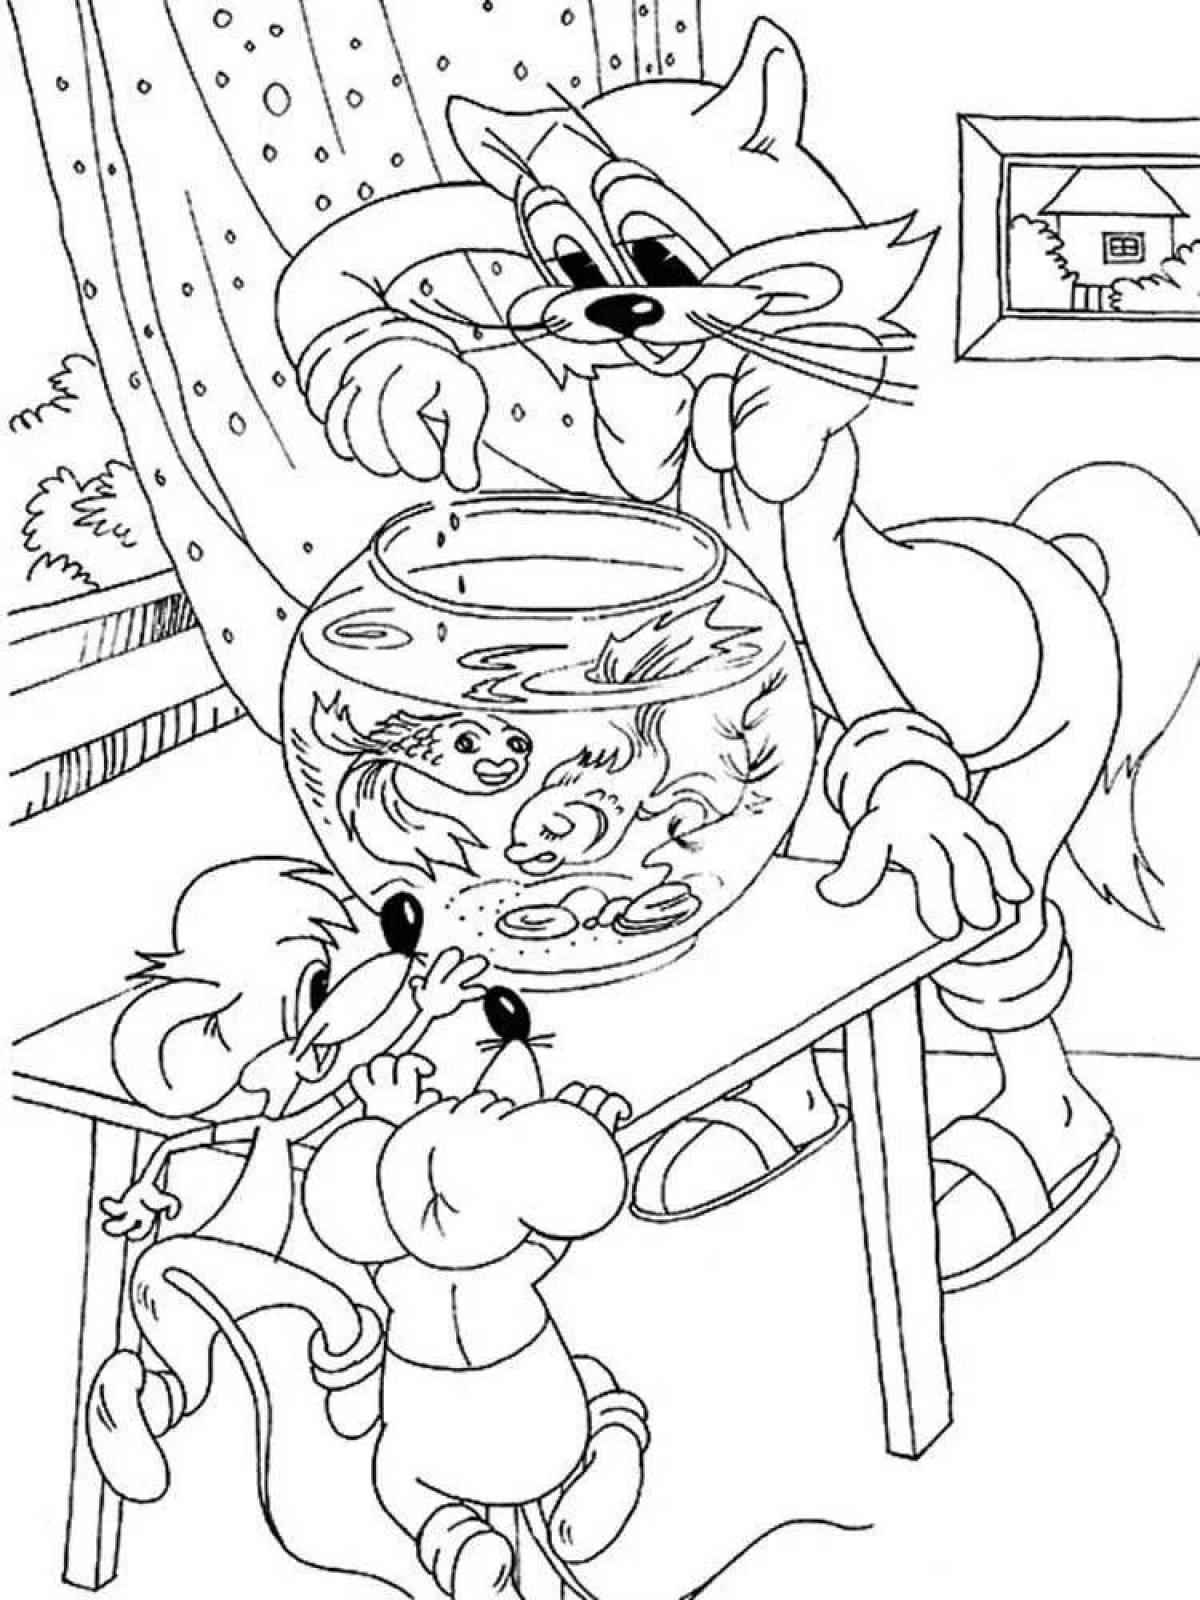 Кот Леопольд раскраска для детей из мультфильма